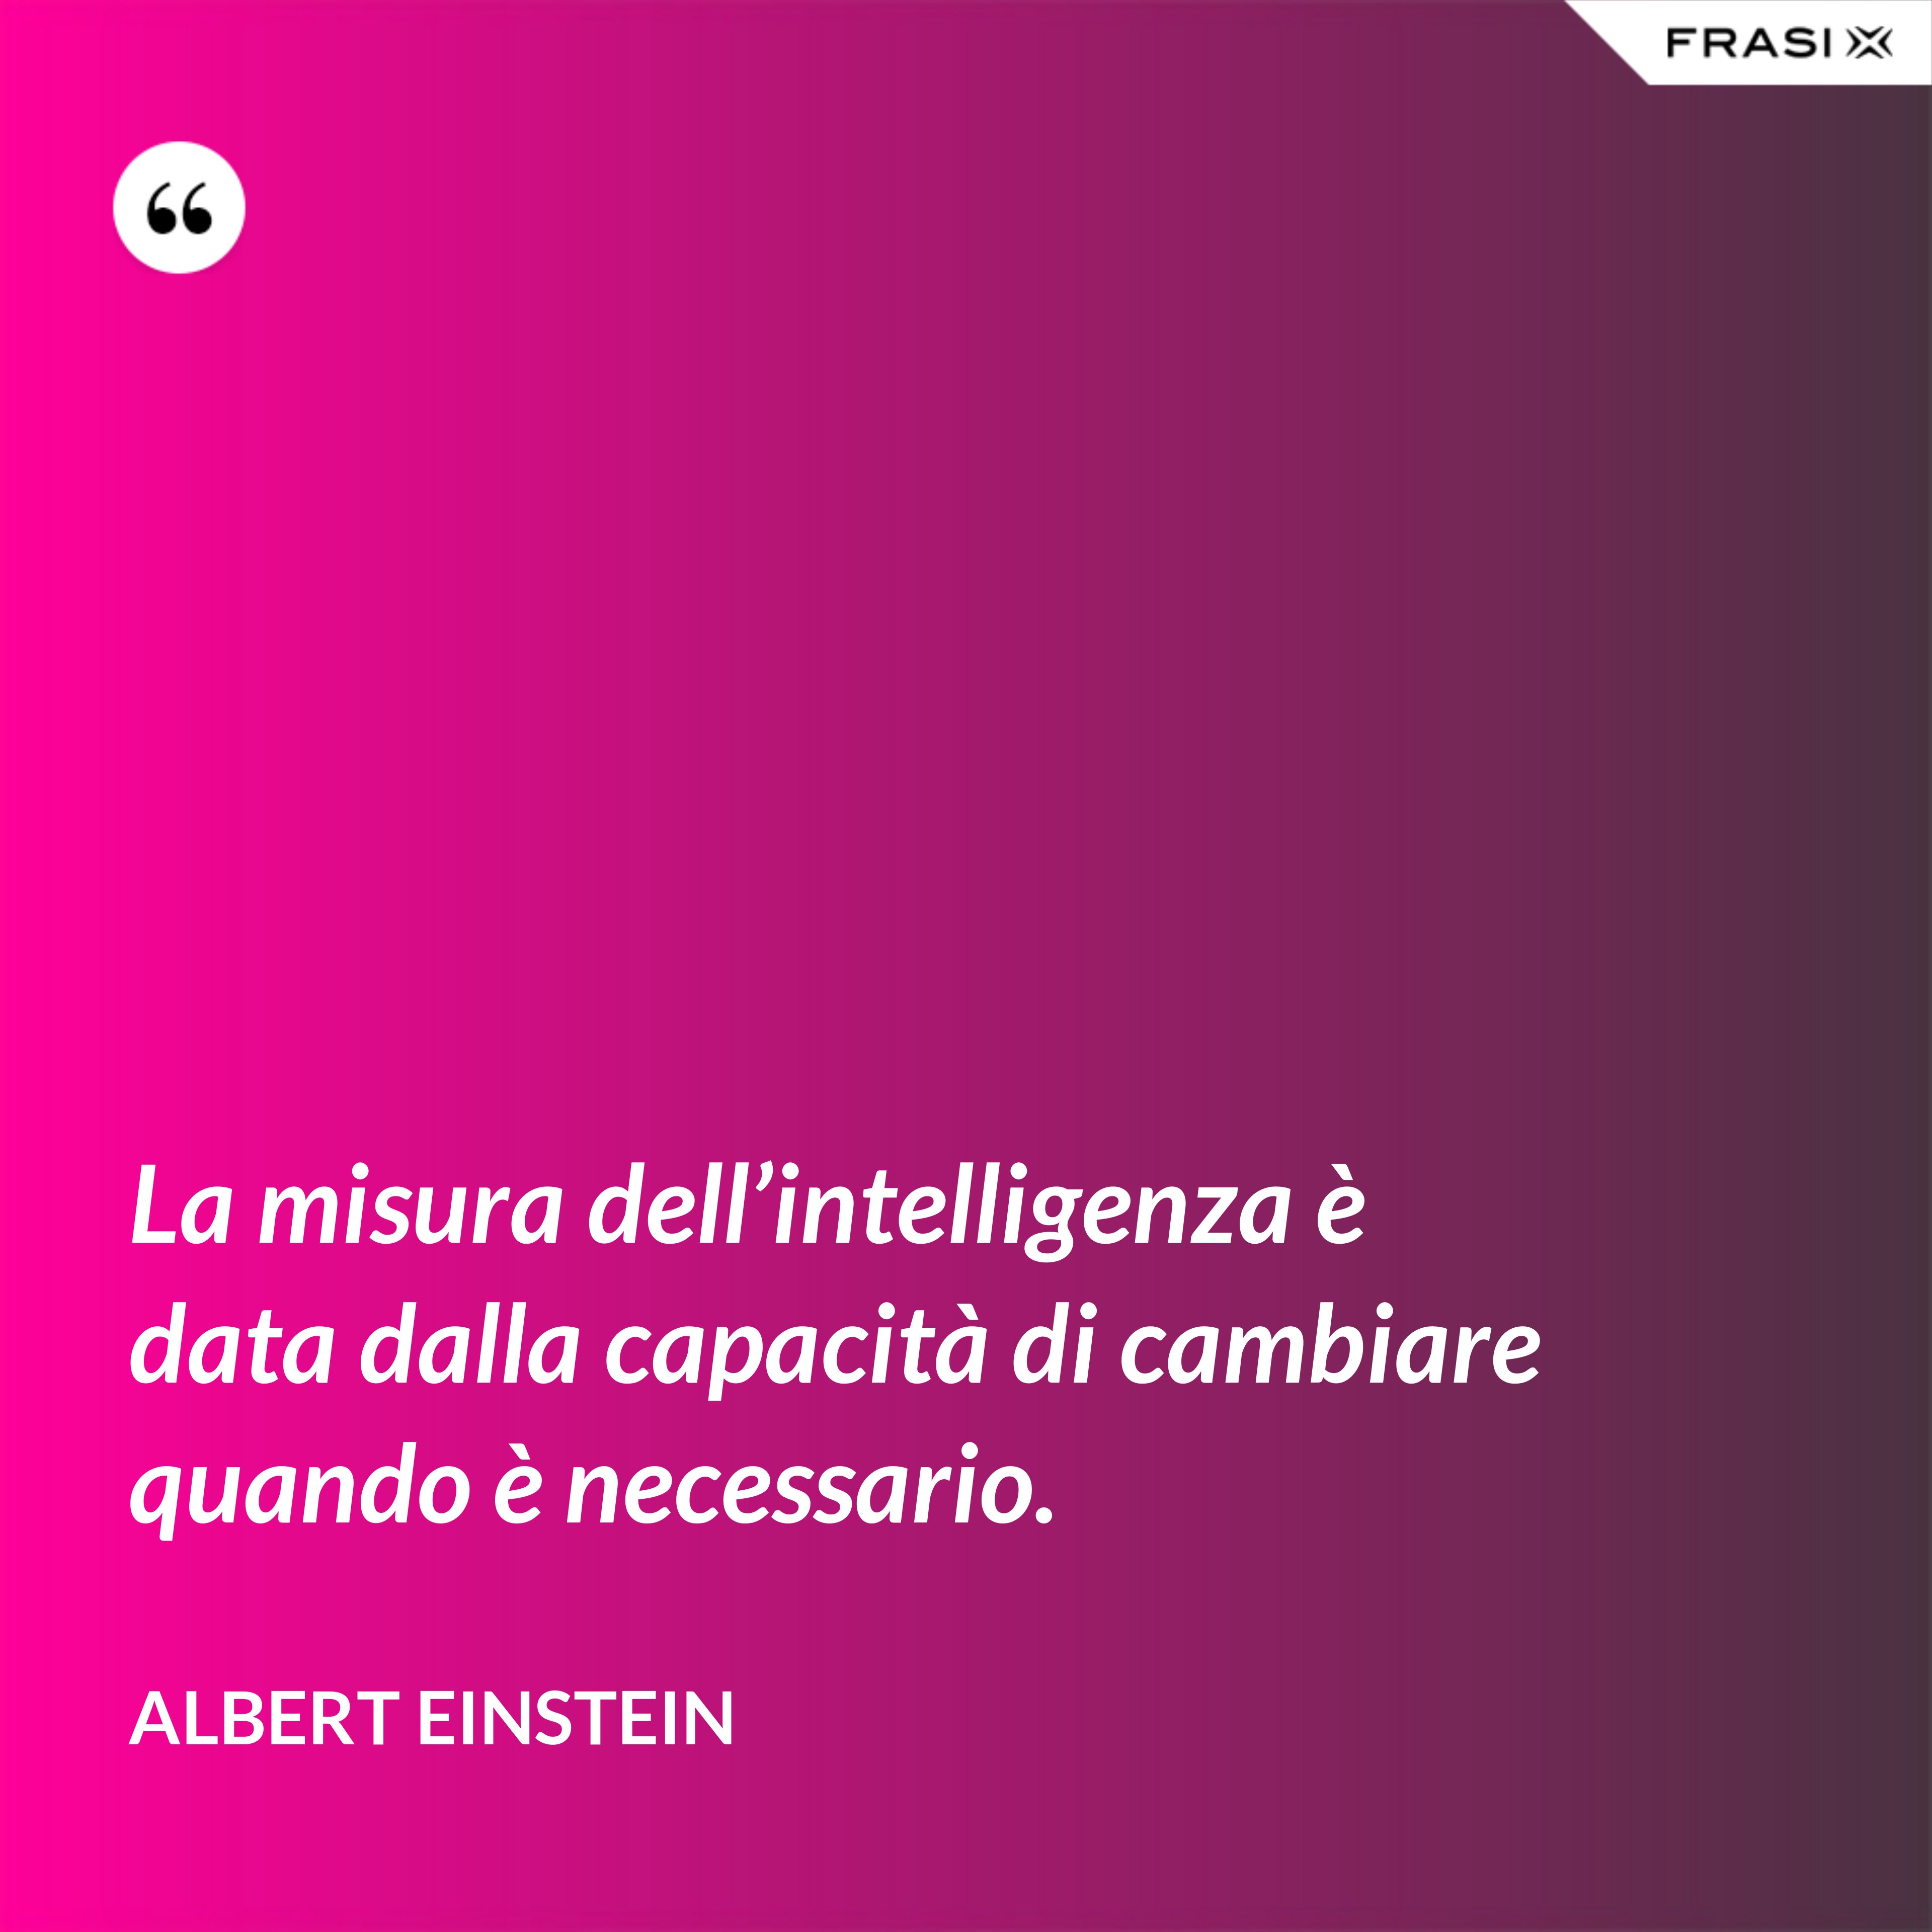 La misura dell’intelligenza è data dalla capacità di cambiare quando è necessario. - Albert Einstein